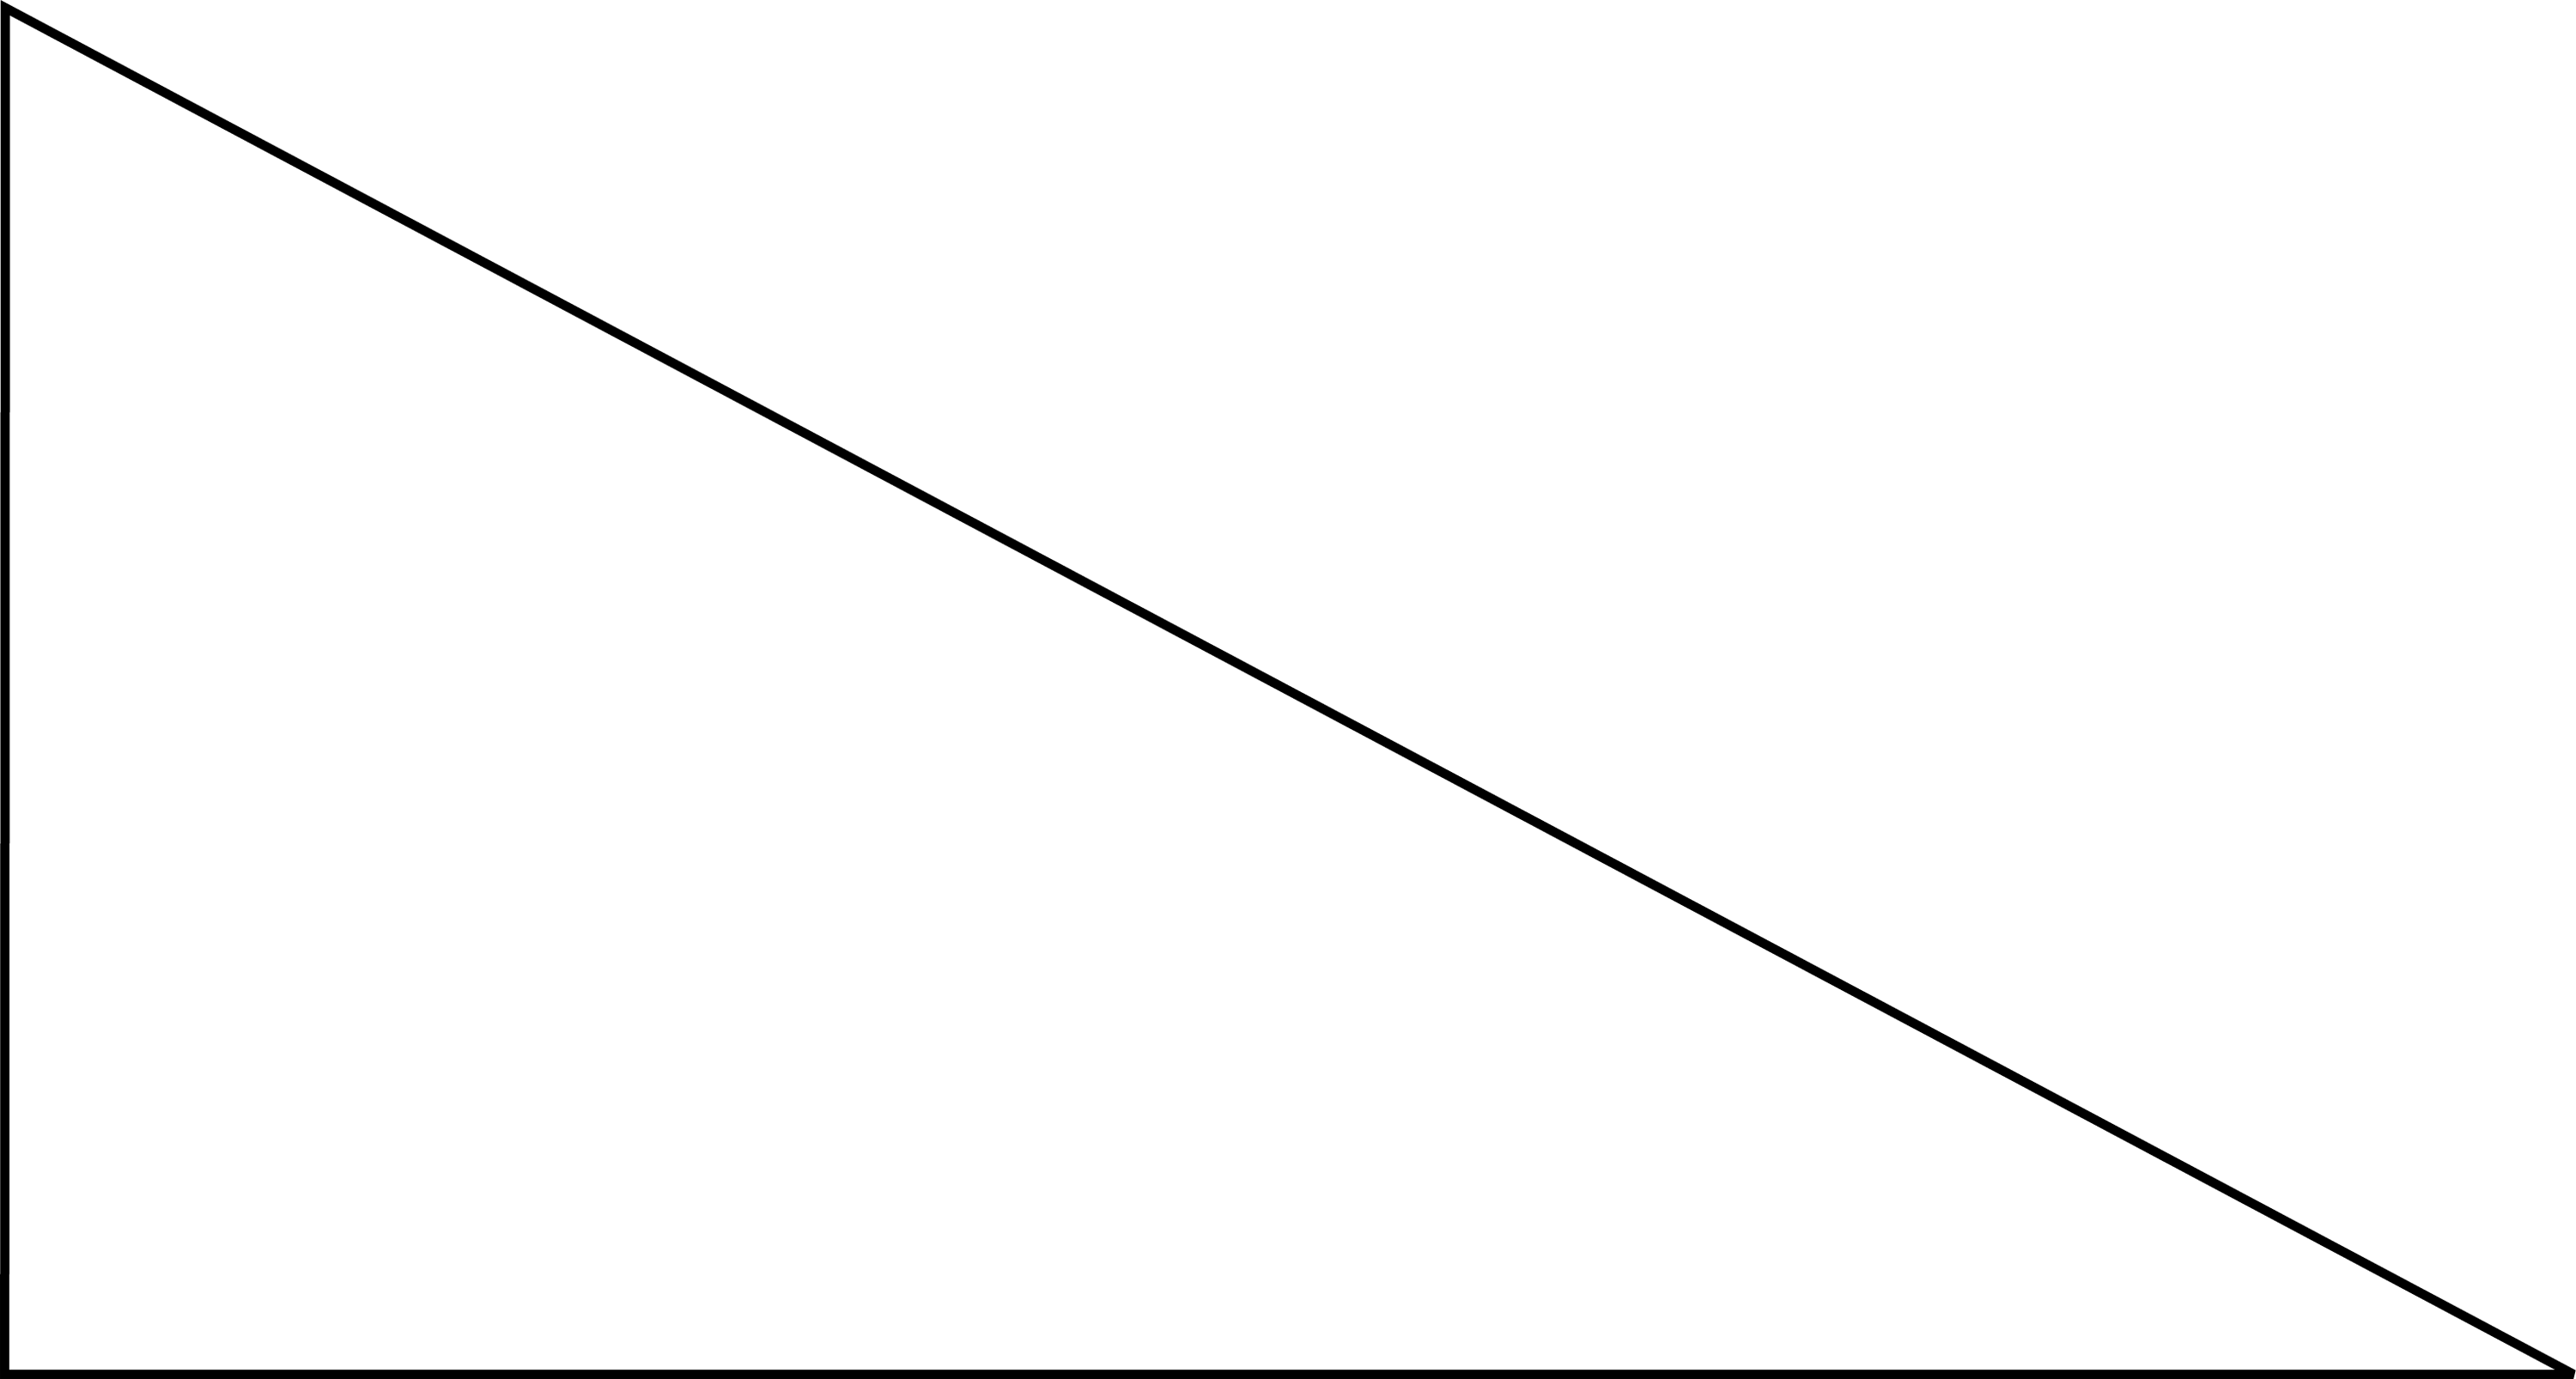 1 5 60 90. Прямой треугольник на прозрачном фоне. Прямоугольный треугольник без фона. Прямоугольный треугольник на прозрачном фоне. Прямоугольный треугольник на прозрачном фоне для фотошопа.